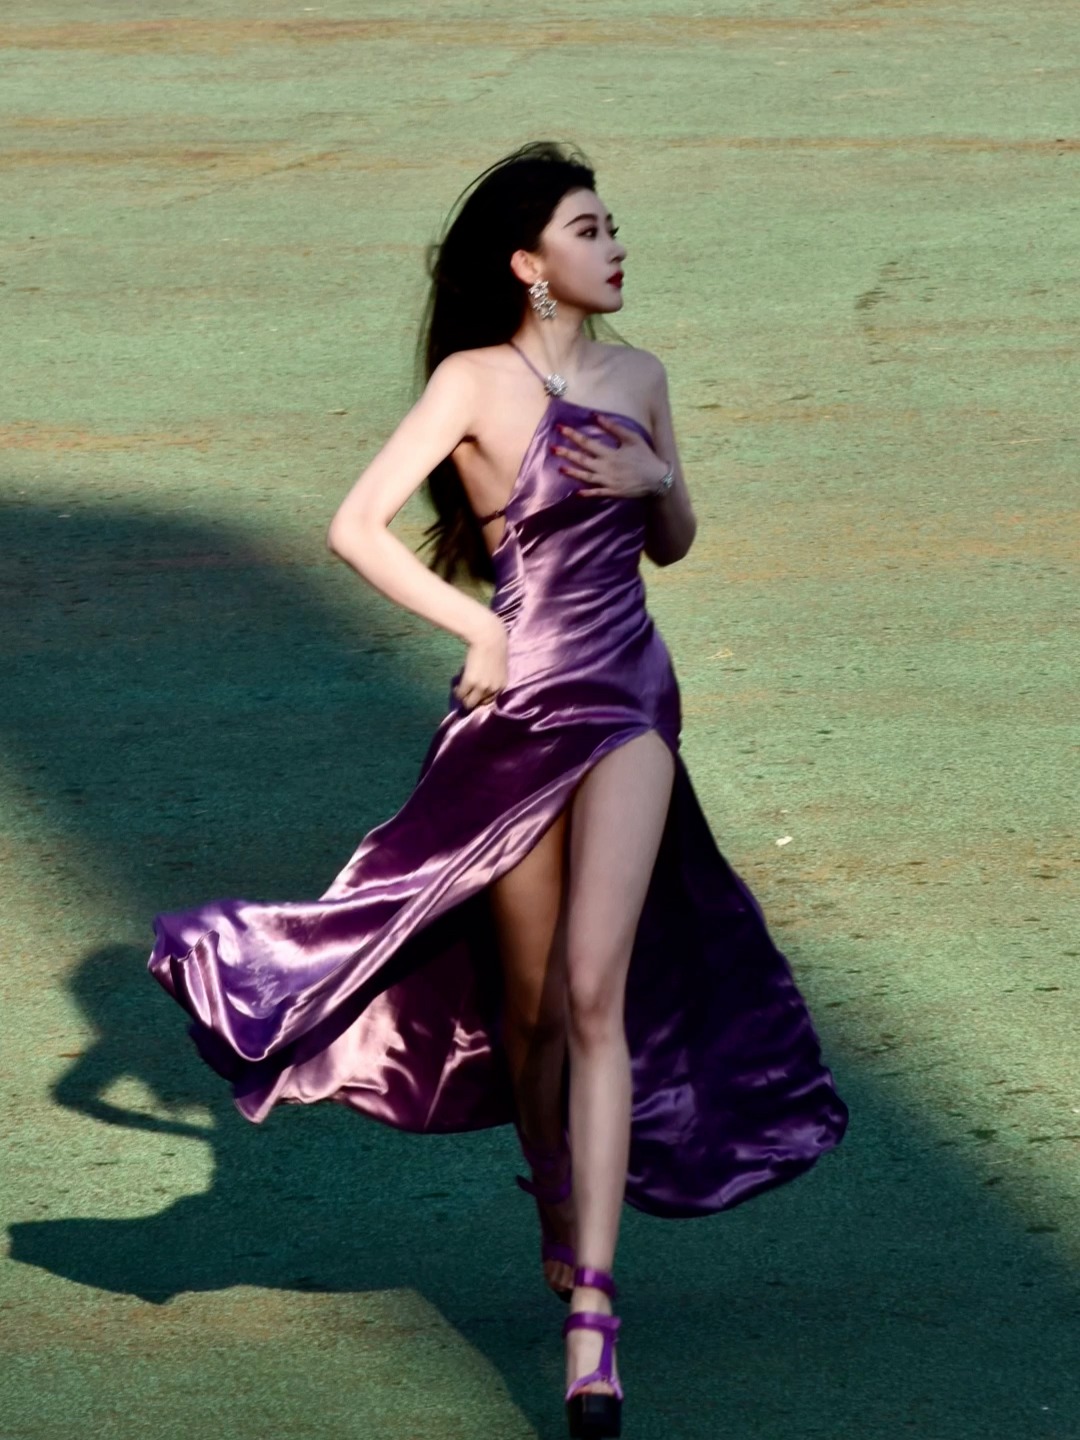 Đến trễ lễ khai mạc hội thao, nữ sinh xách váy chạy tạo nên khoảnh khắc đẹp như phim: 6 giây thần thánh!- Ảnh 3.